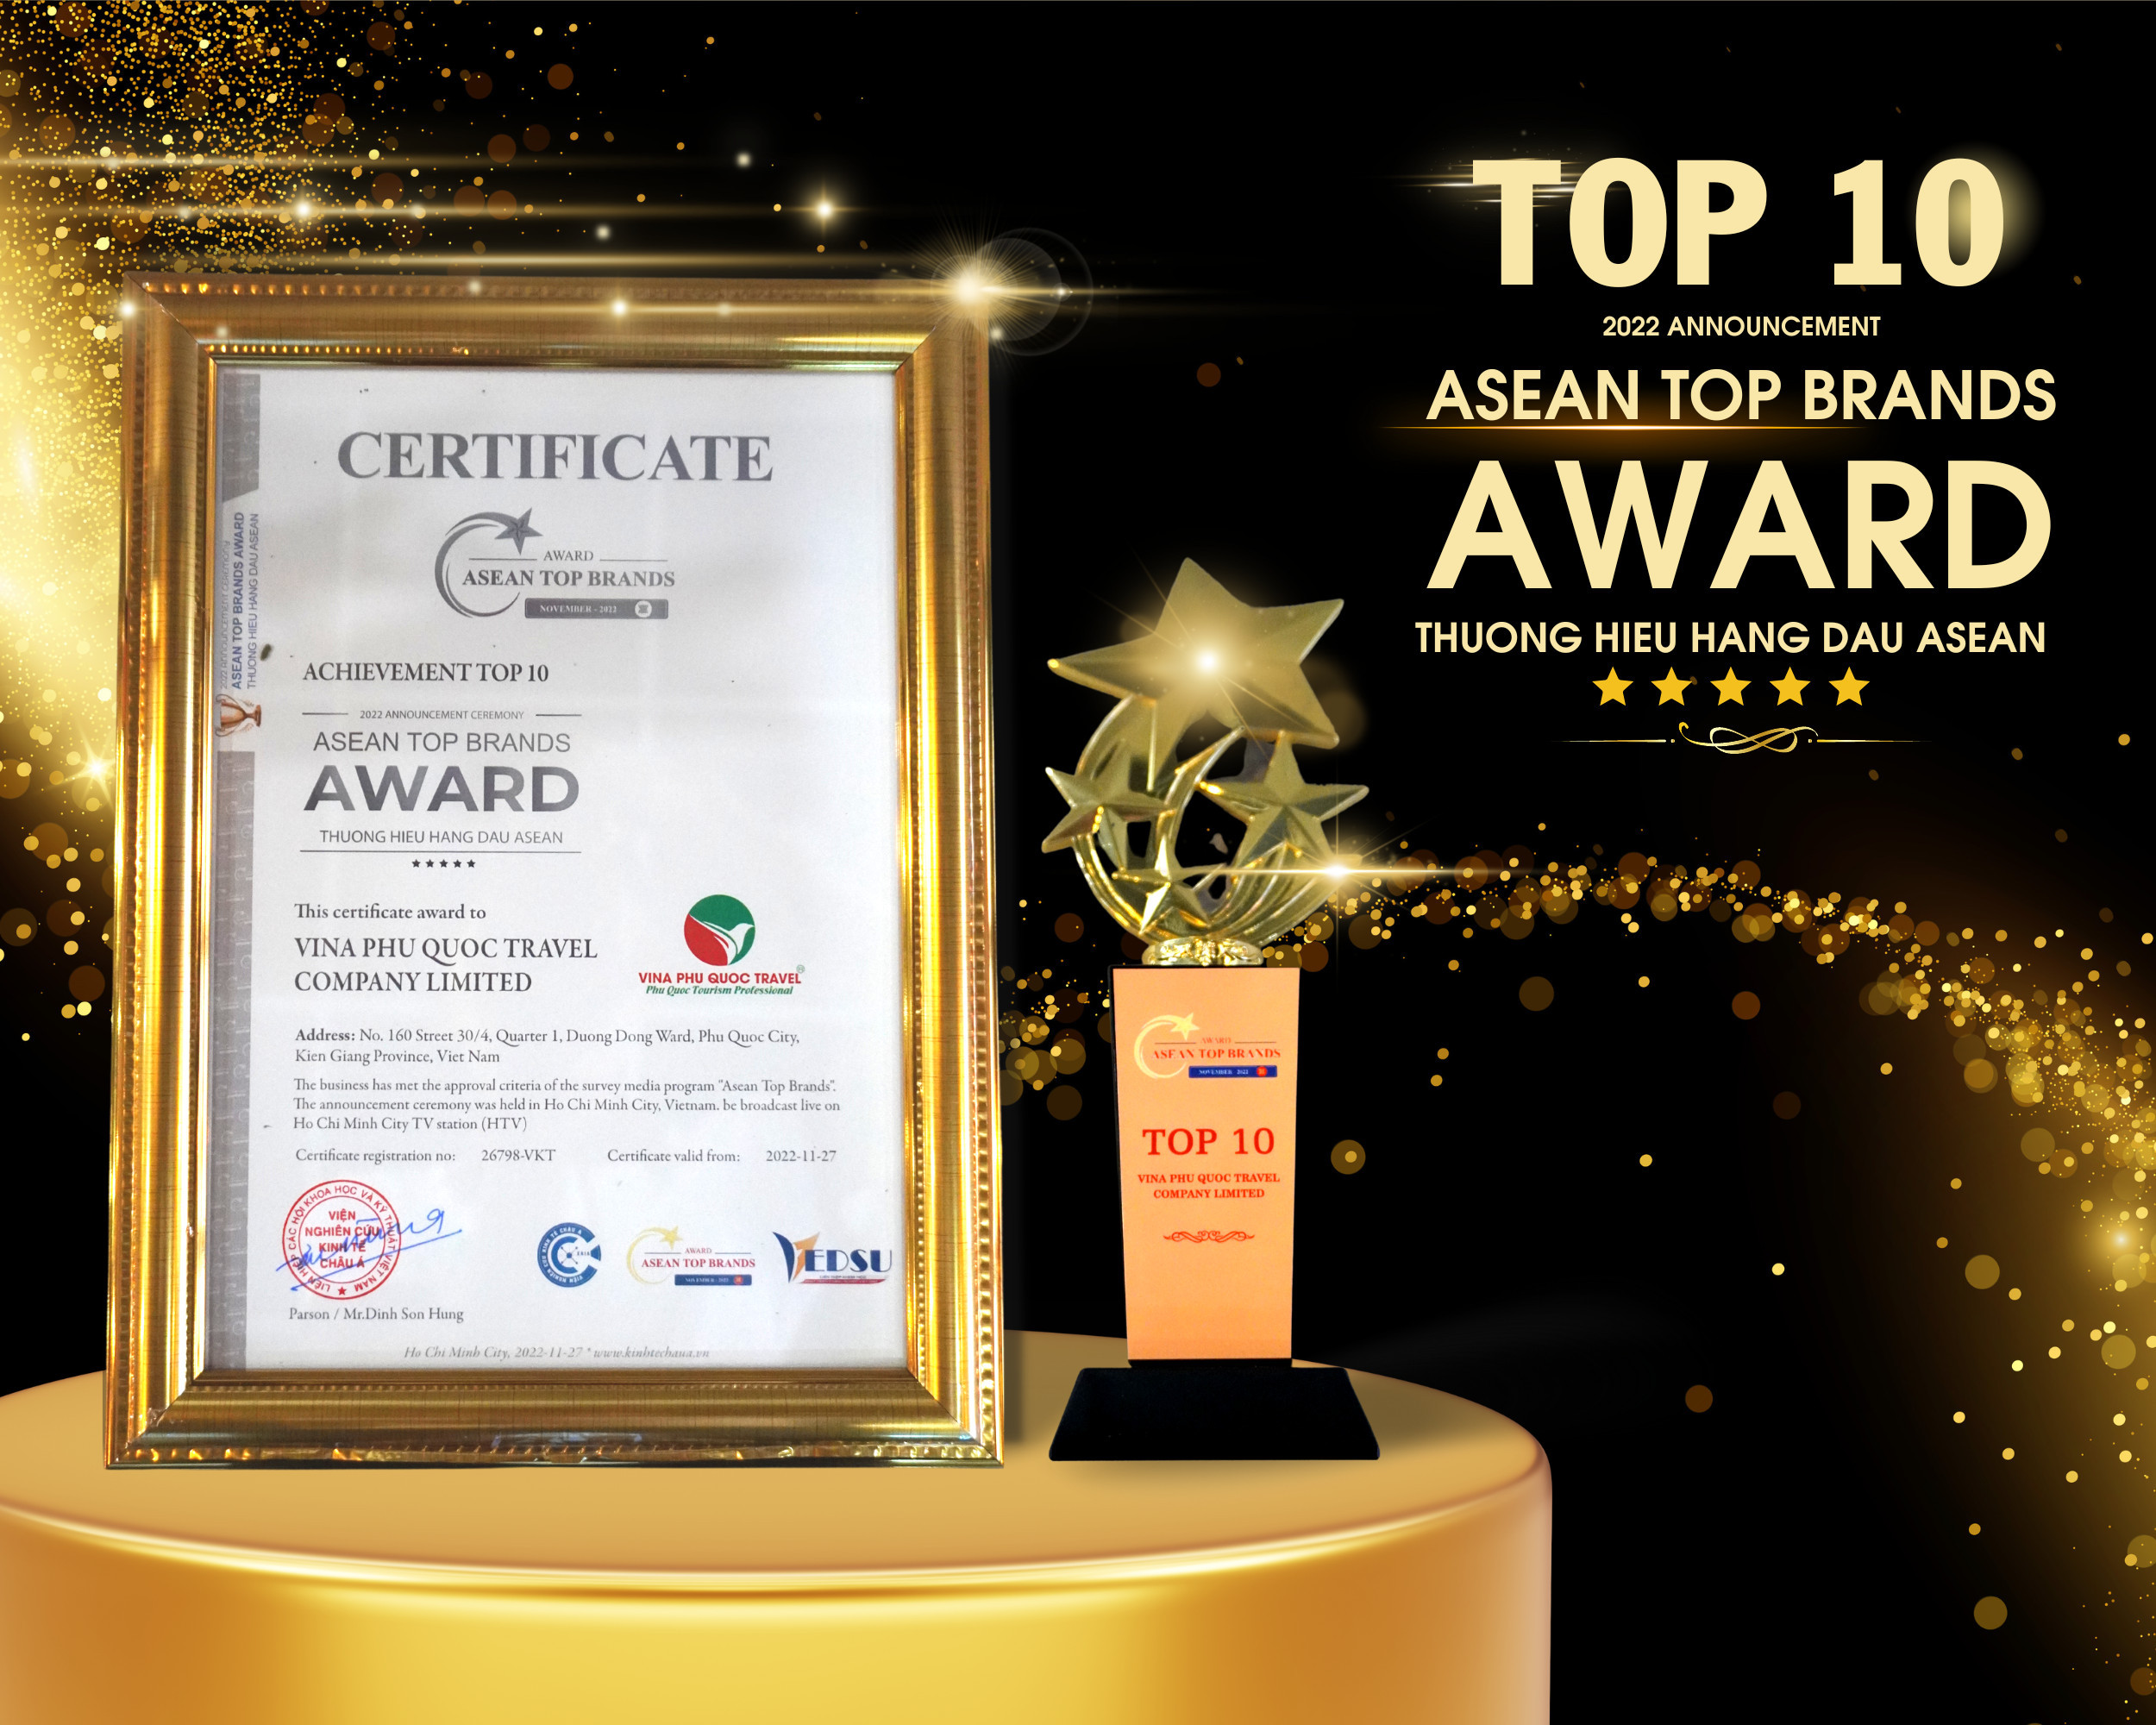 Chứng nhận giải thưởng của Vina Phú Quốc Travel  - z3917790097347-3-964 - Vina Phú Quốc Travel nhận danh hiệu Thương hiệu hàng đầu ASEAN 2022